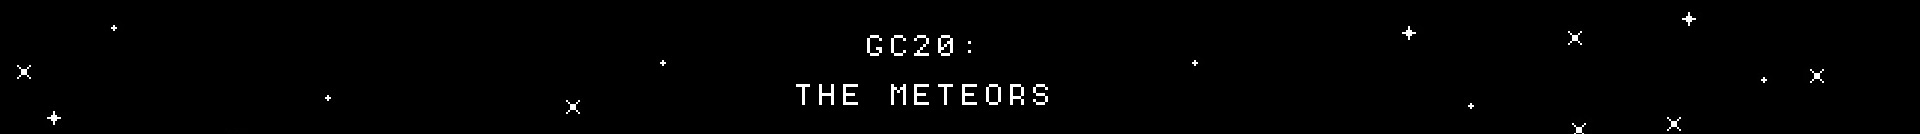 GC20: The Meteors